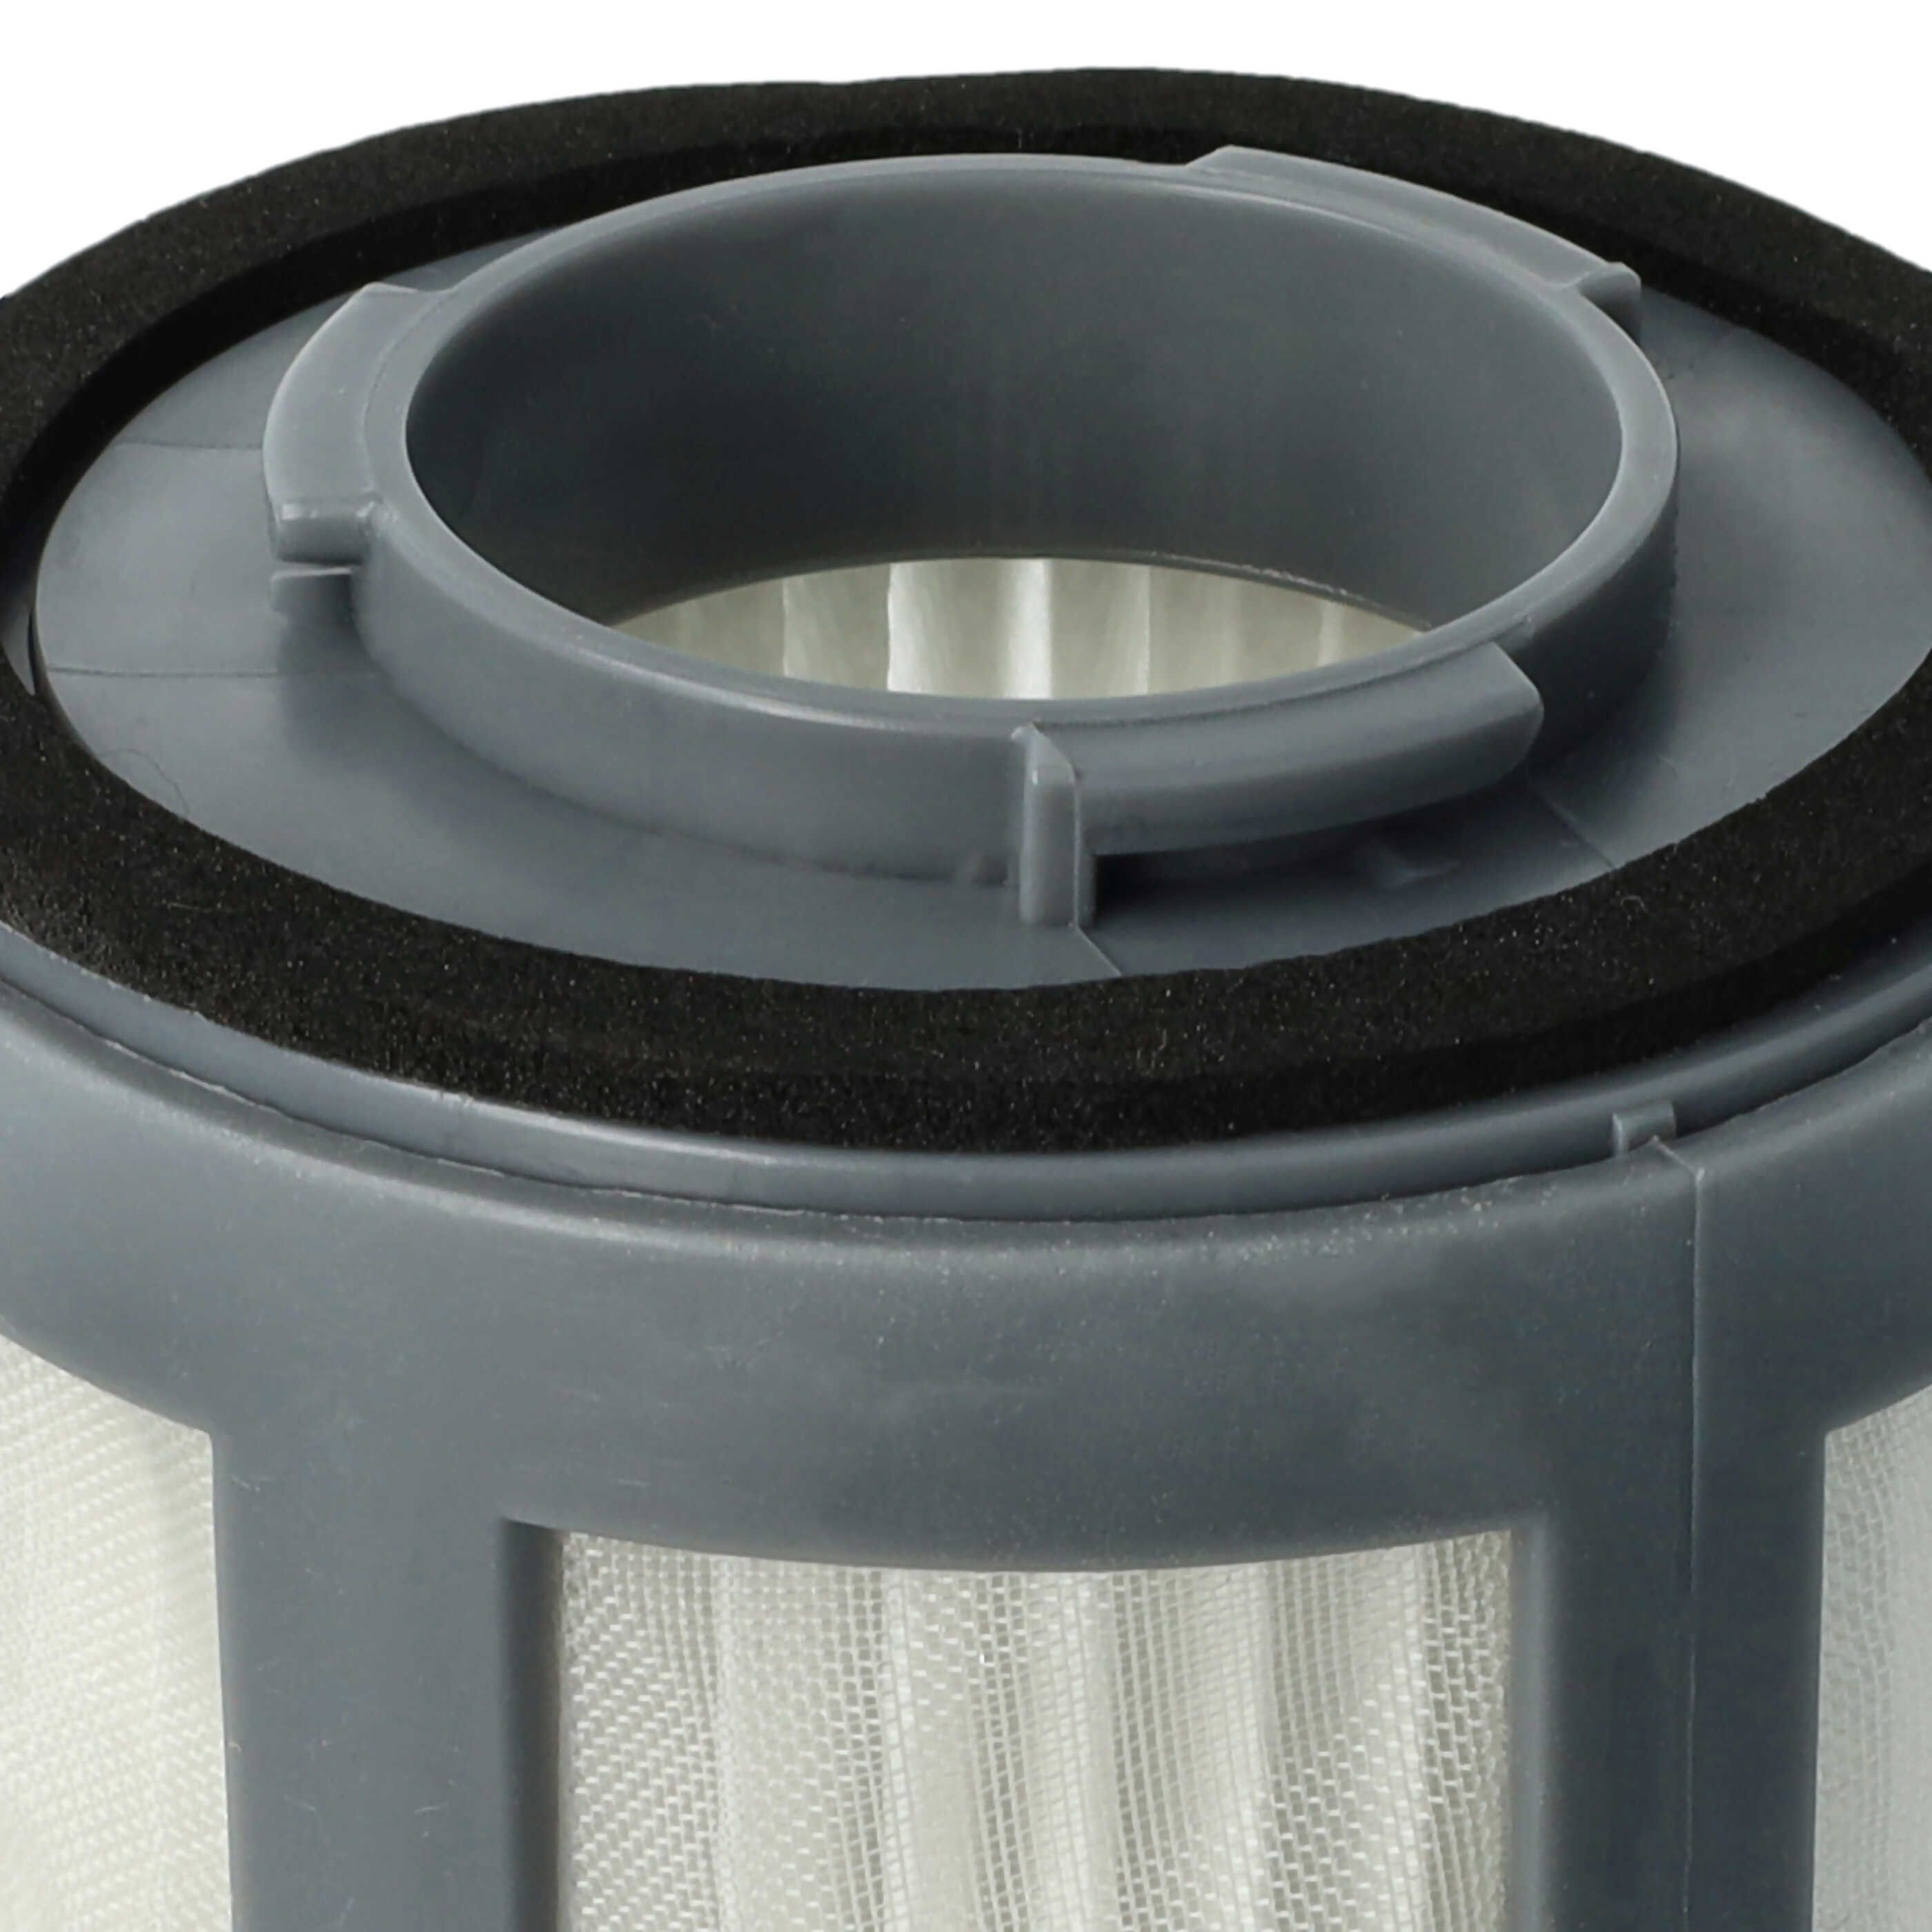 Filtro per aspirapolvere Bomann ecc. - elemento filtrante (filtro in nylon + HEPA), nero / bianco / grigio